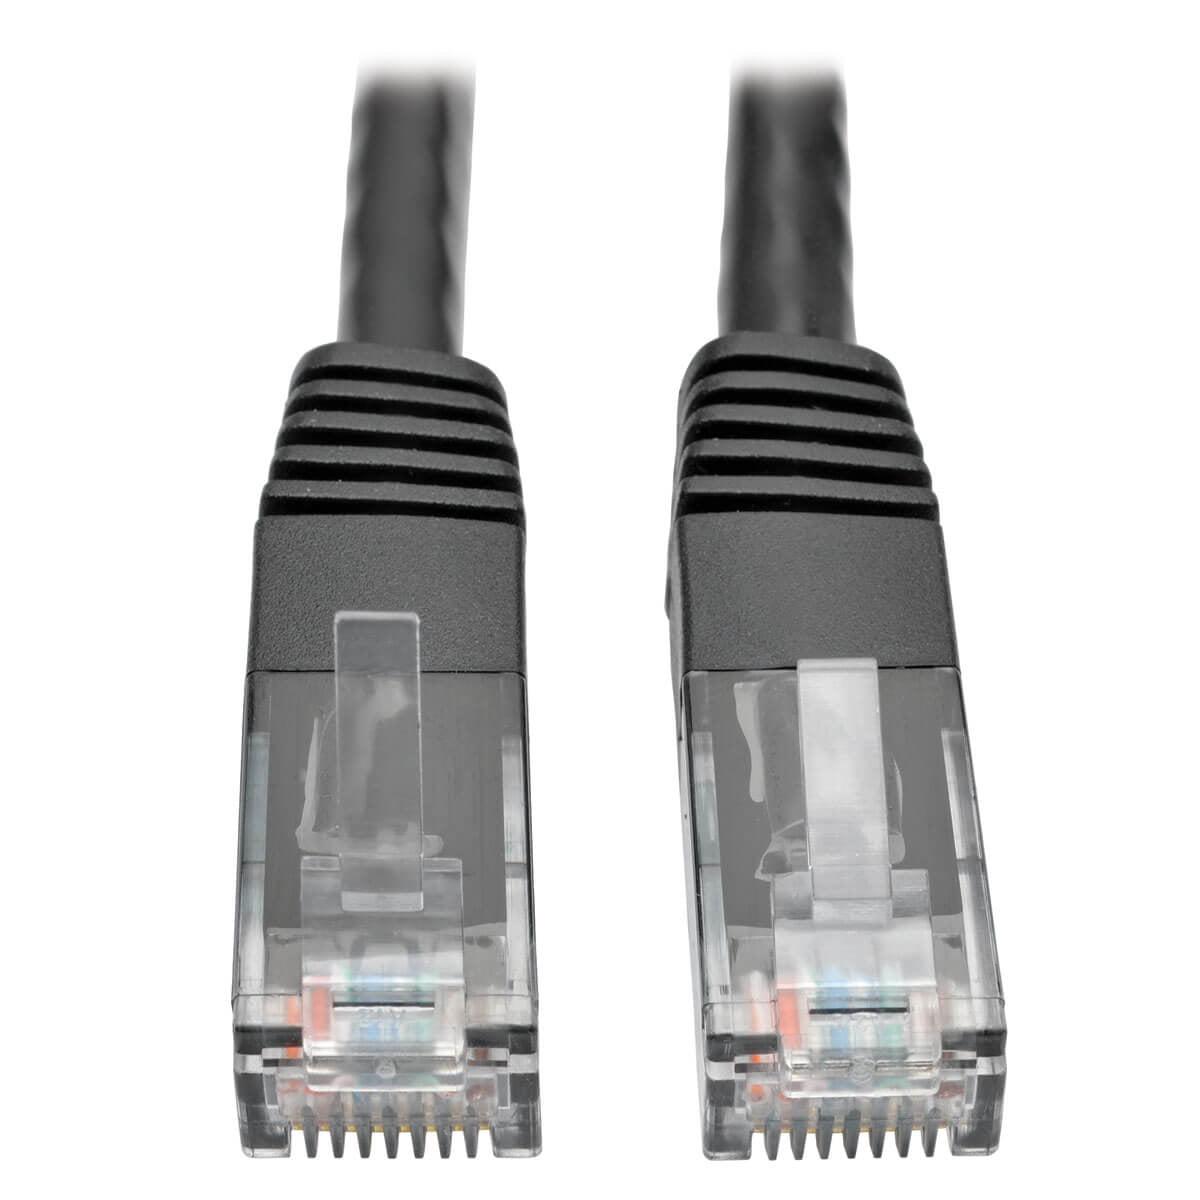 Tripp Lite N200-025-Bk Cat6 Gigabit Molded (Utp) Ethernet Cable (Rj45 M/M), Black, 25 Ft. (7.62 M)